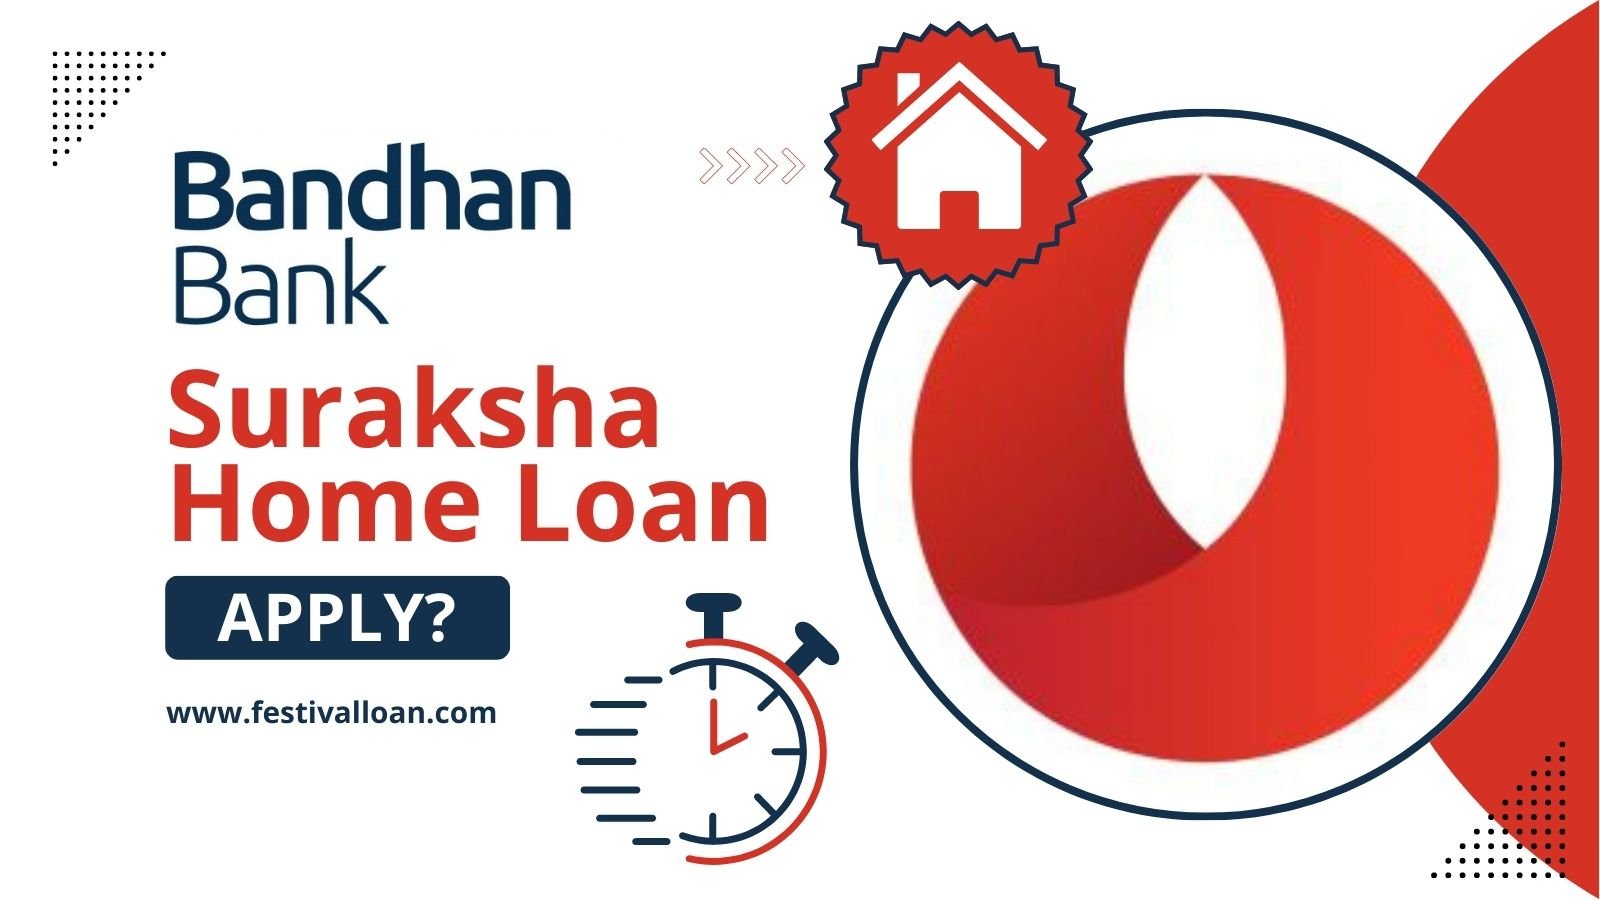 Bandhan Bank Suraksha Home Loan के लिए आवेदन कैसे करें?